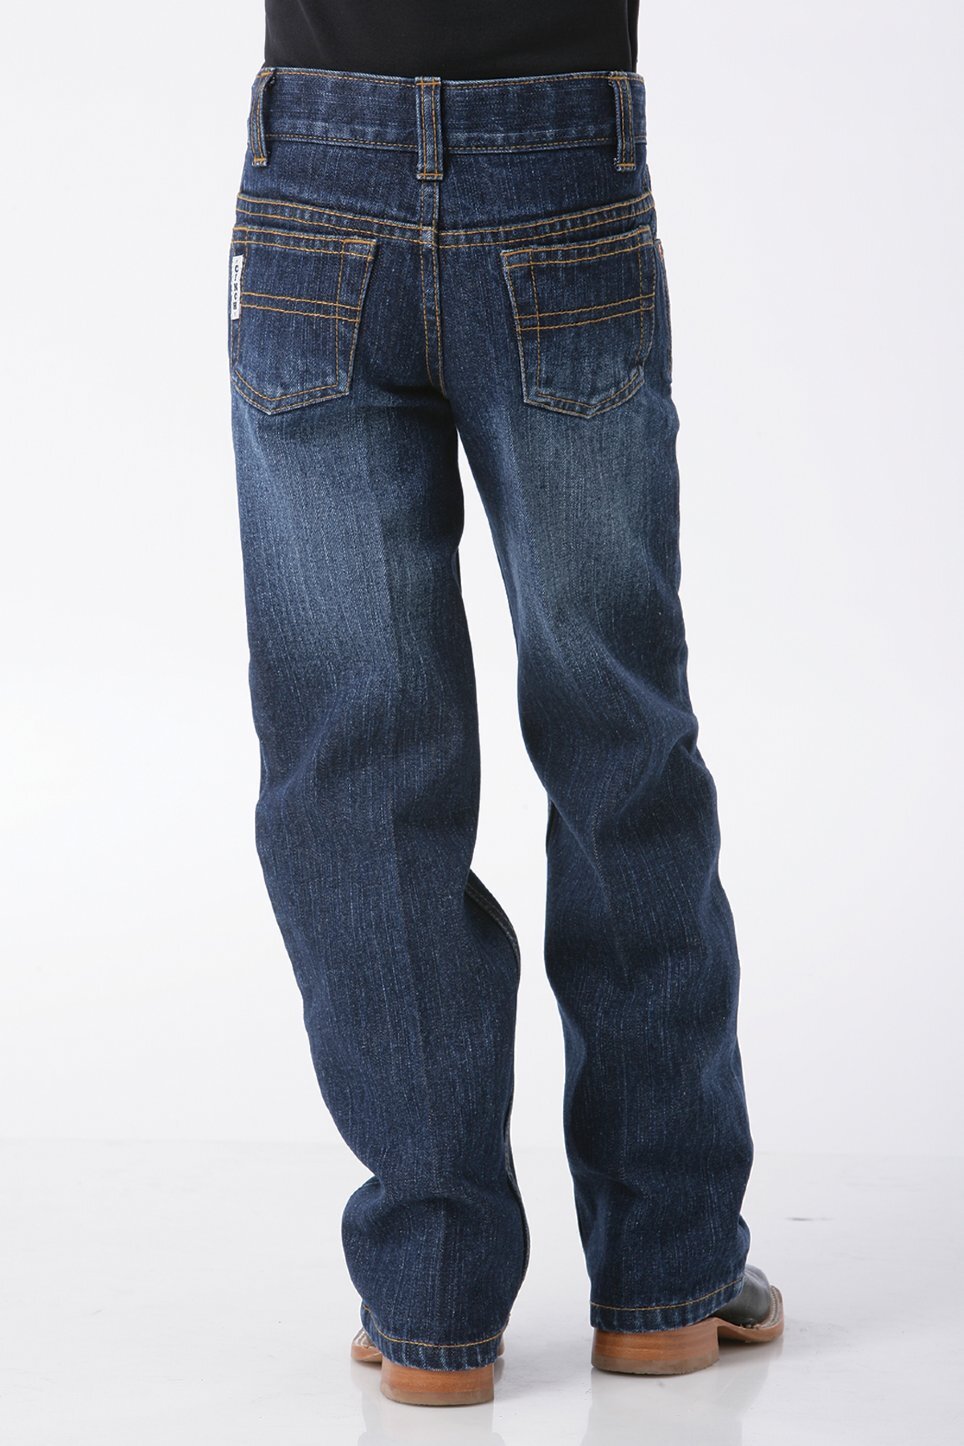 Buy Cinch Boys White Label Slim Fit Jeans Jnr (MB12841002) Dark ...